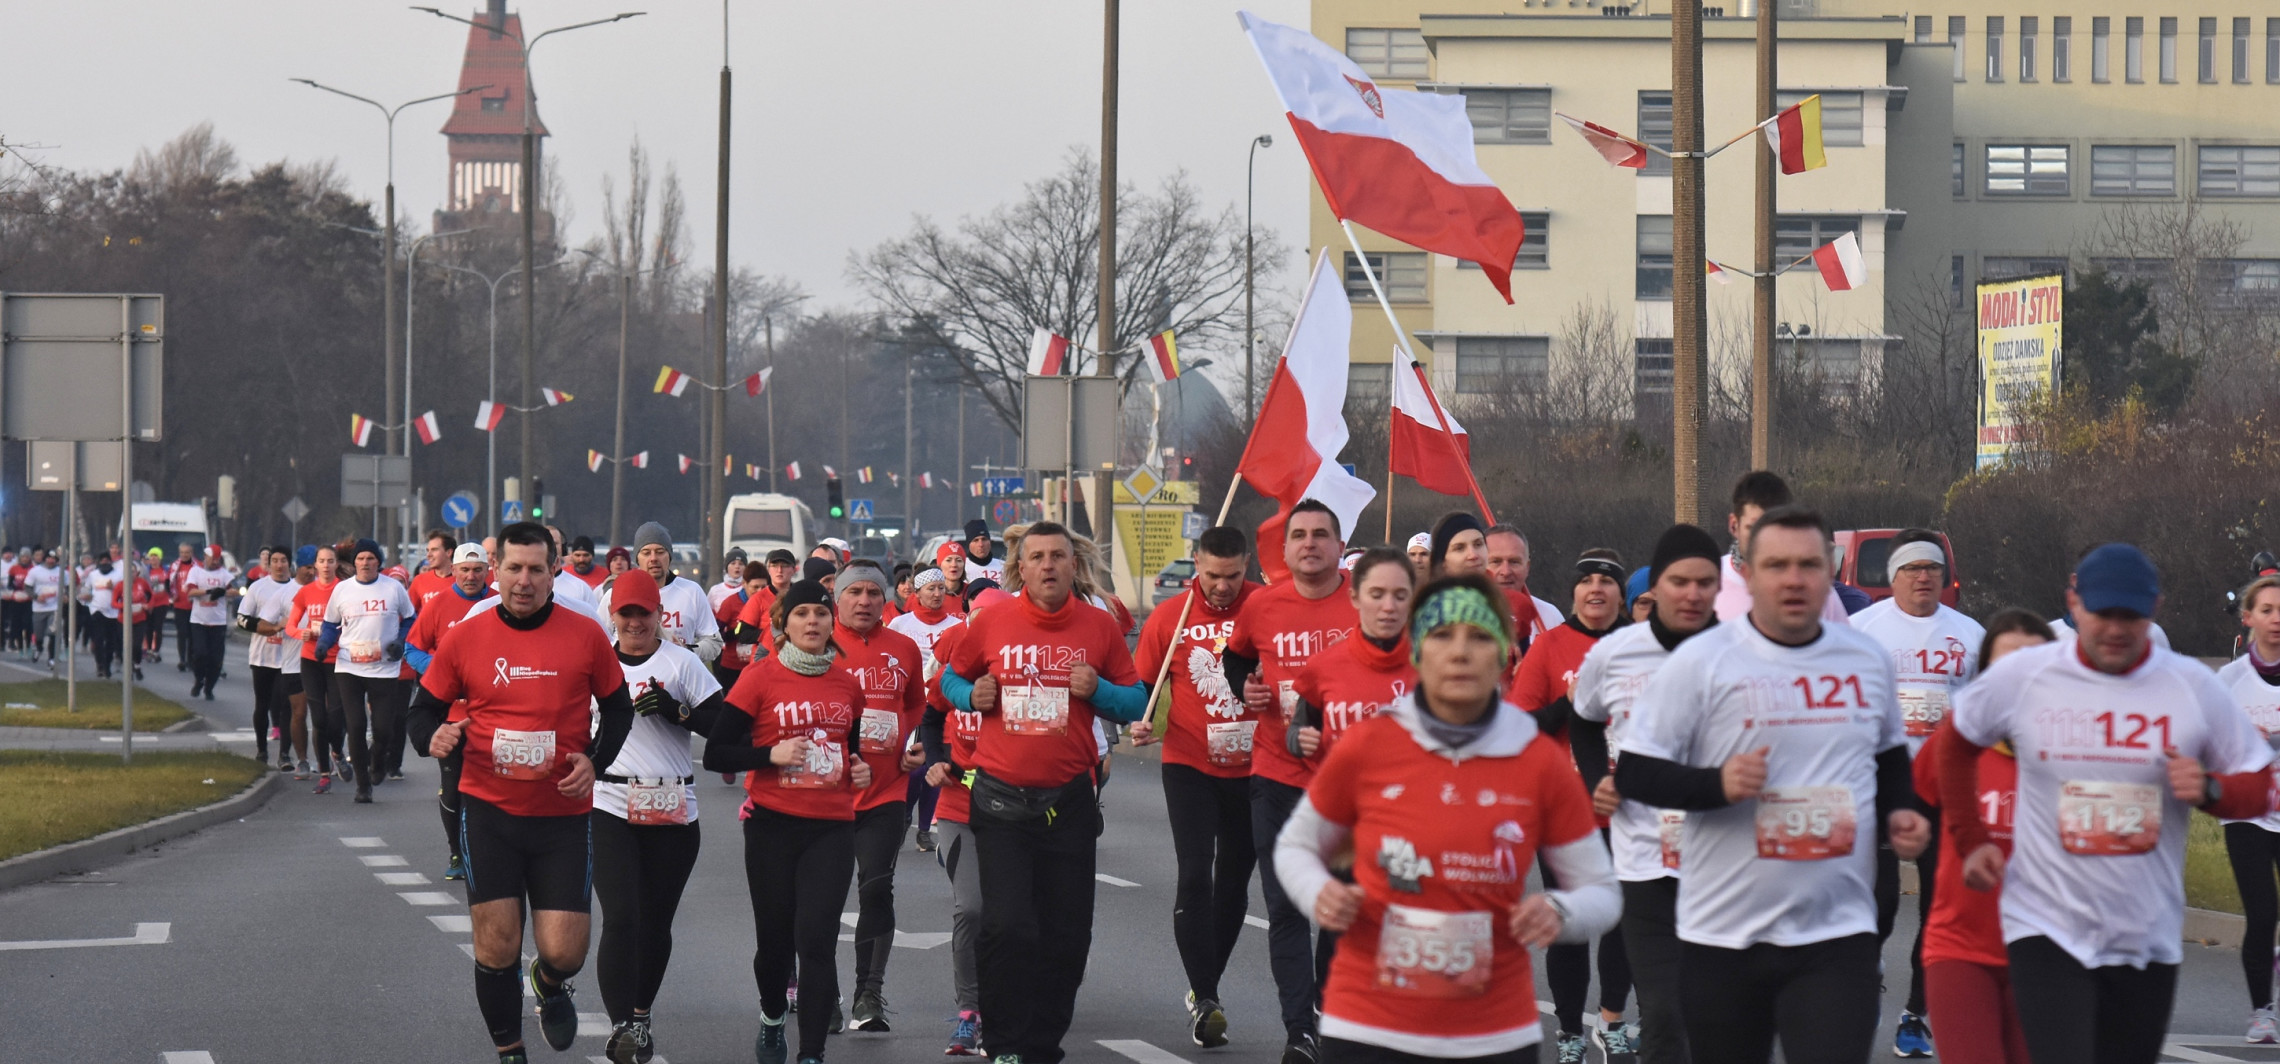 Inowrocław - Biało-czerwone bieganie w Inowrocławiu